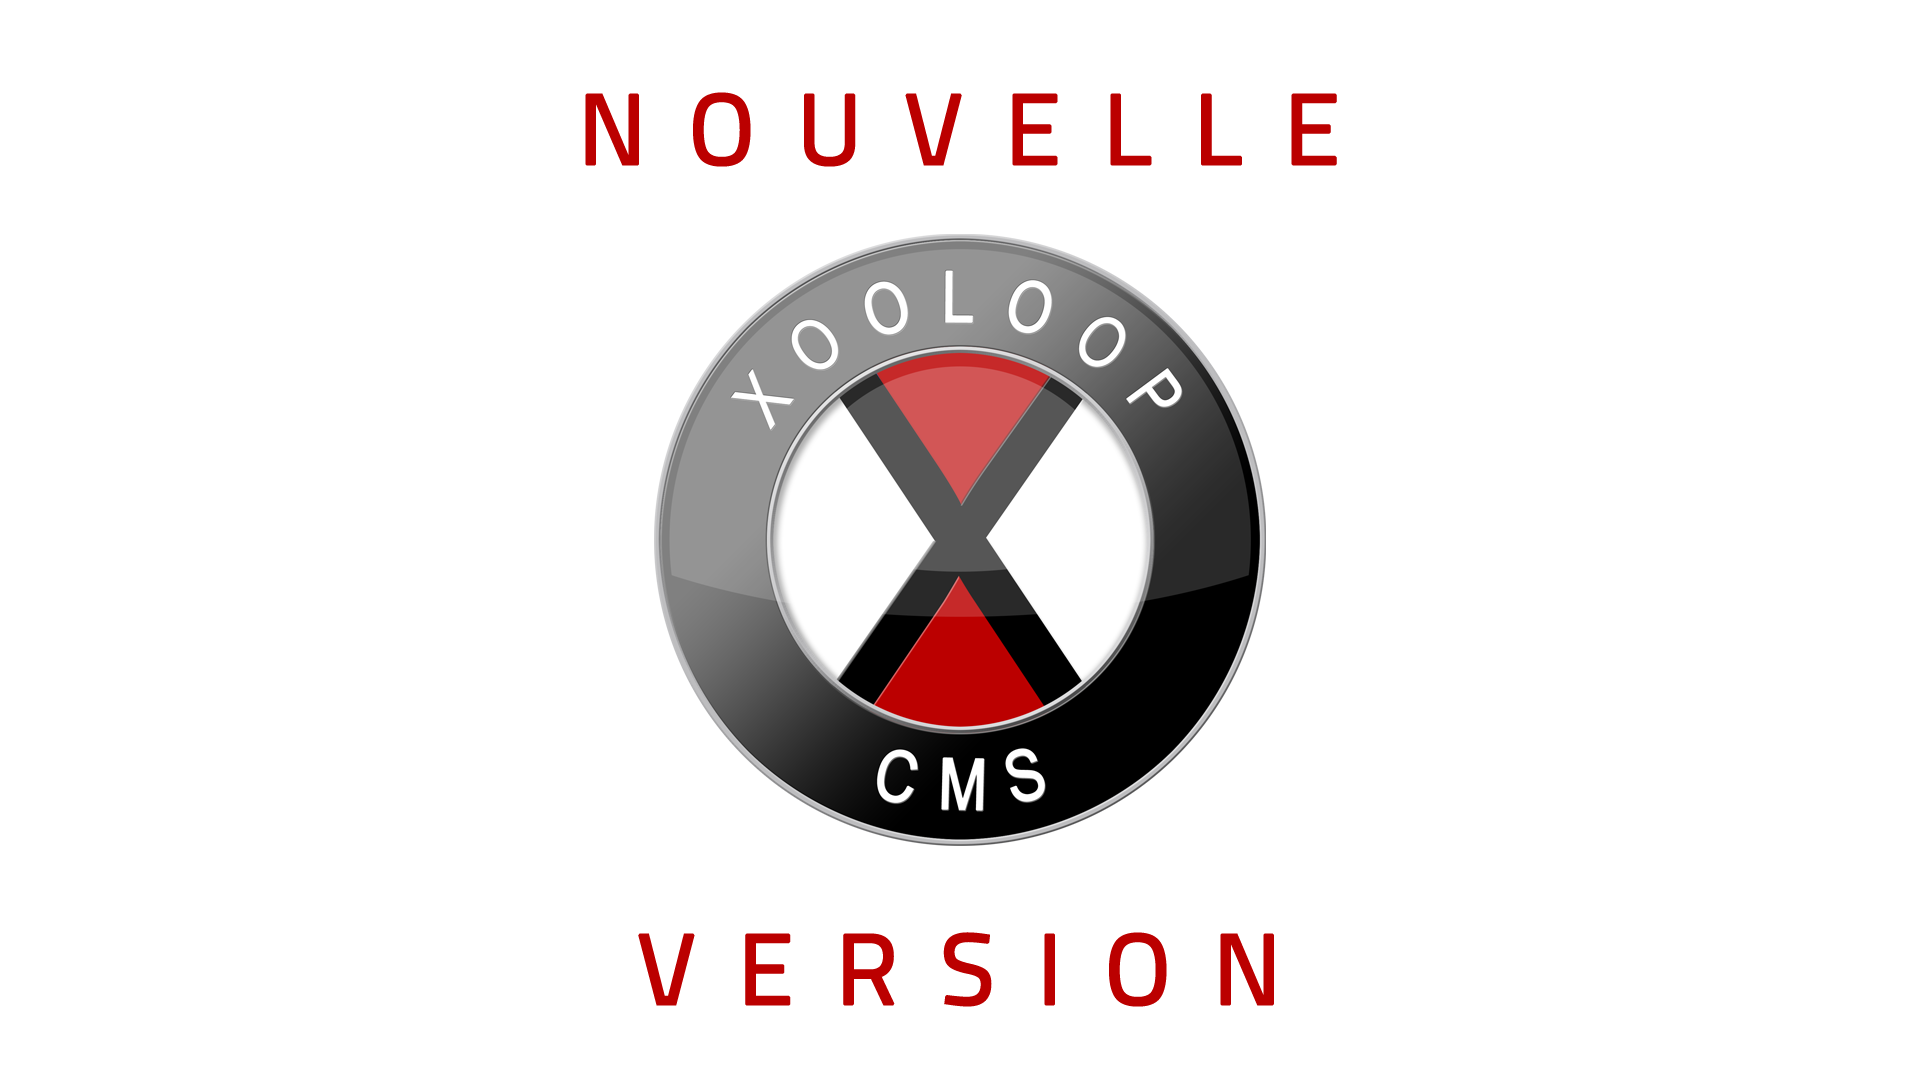 Nouvelle version de Xooloop CMS (v3.4.0)